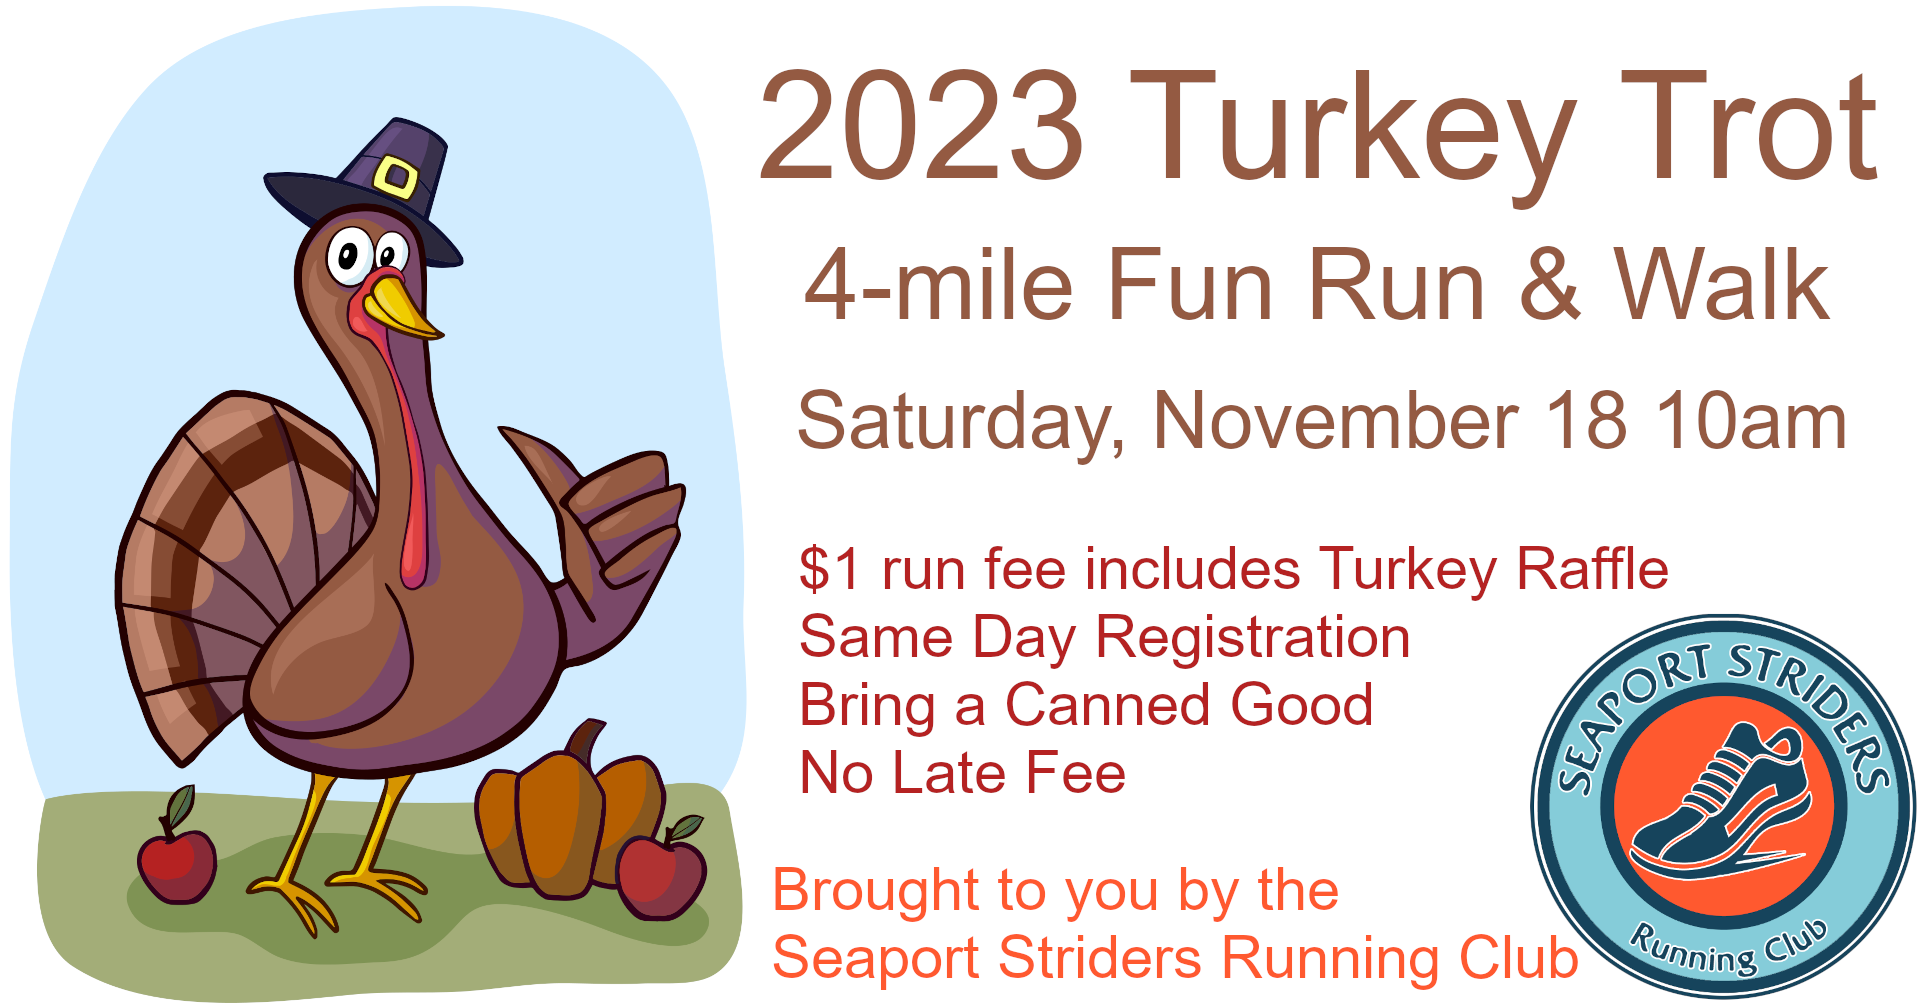 Turkey Trot Run & Walk 2023